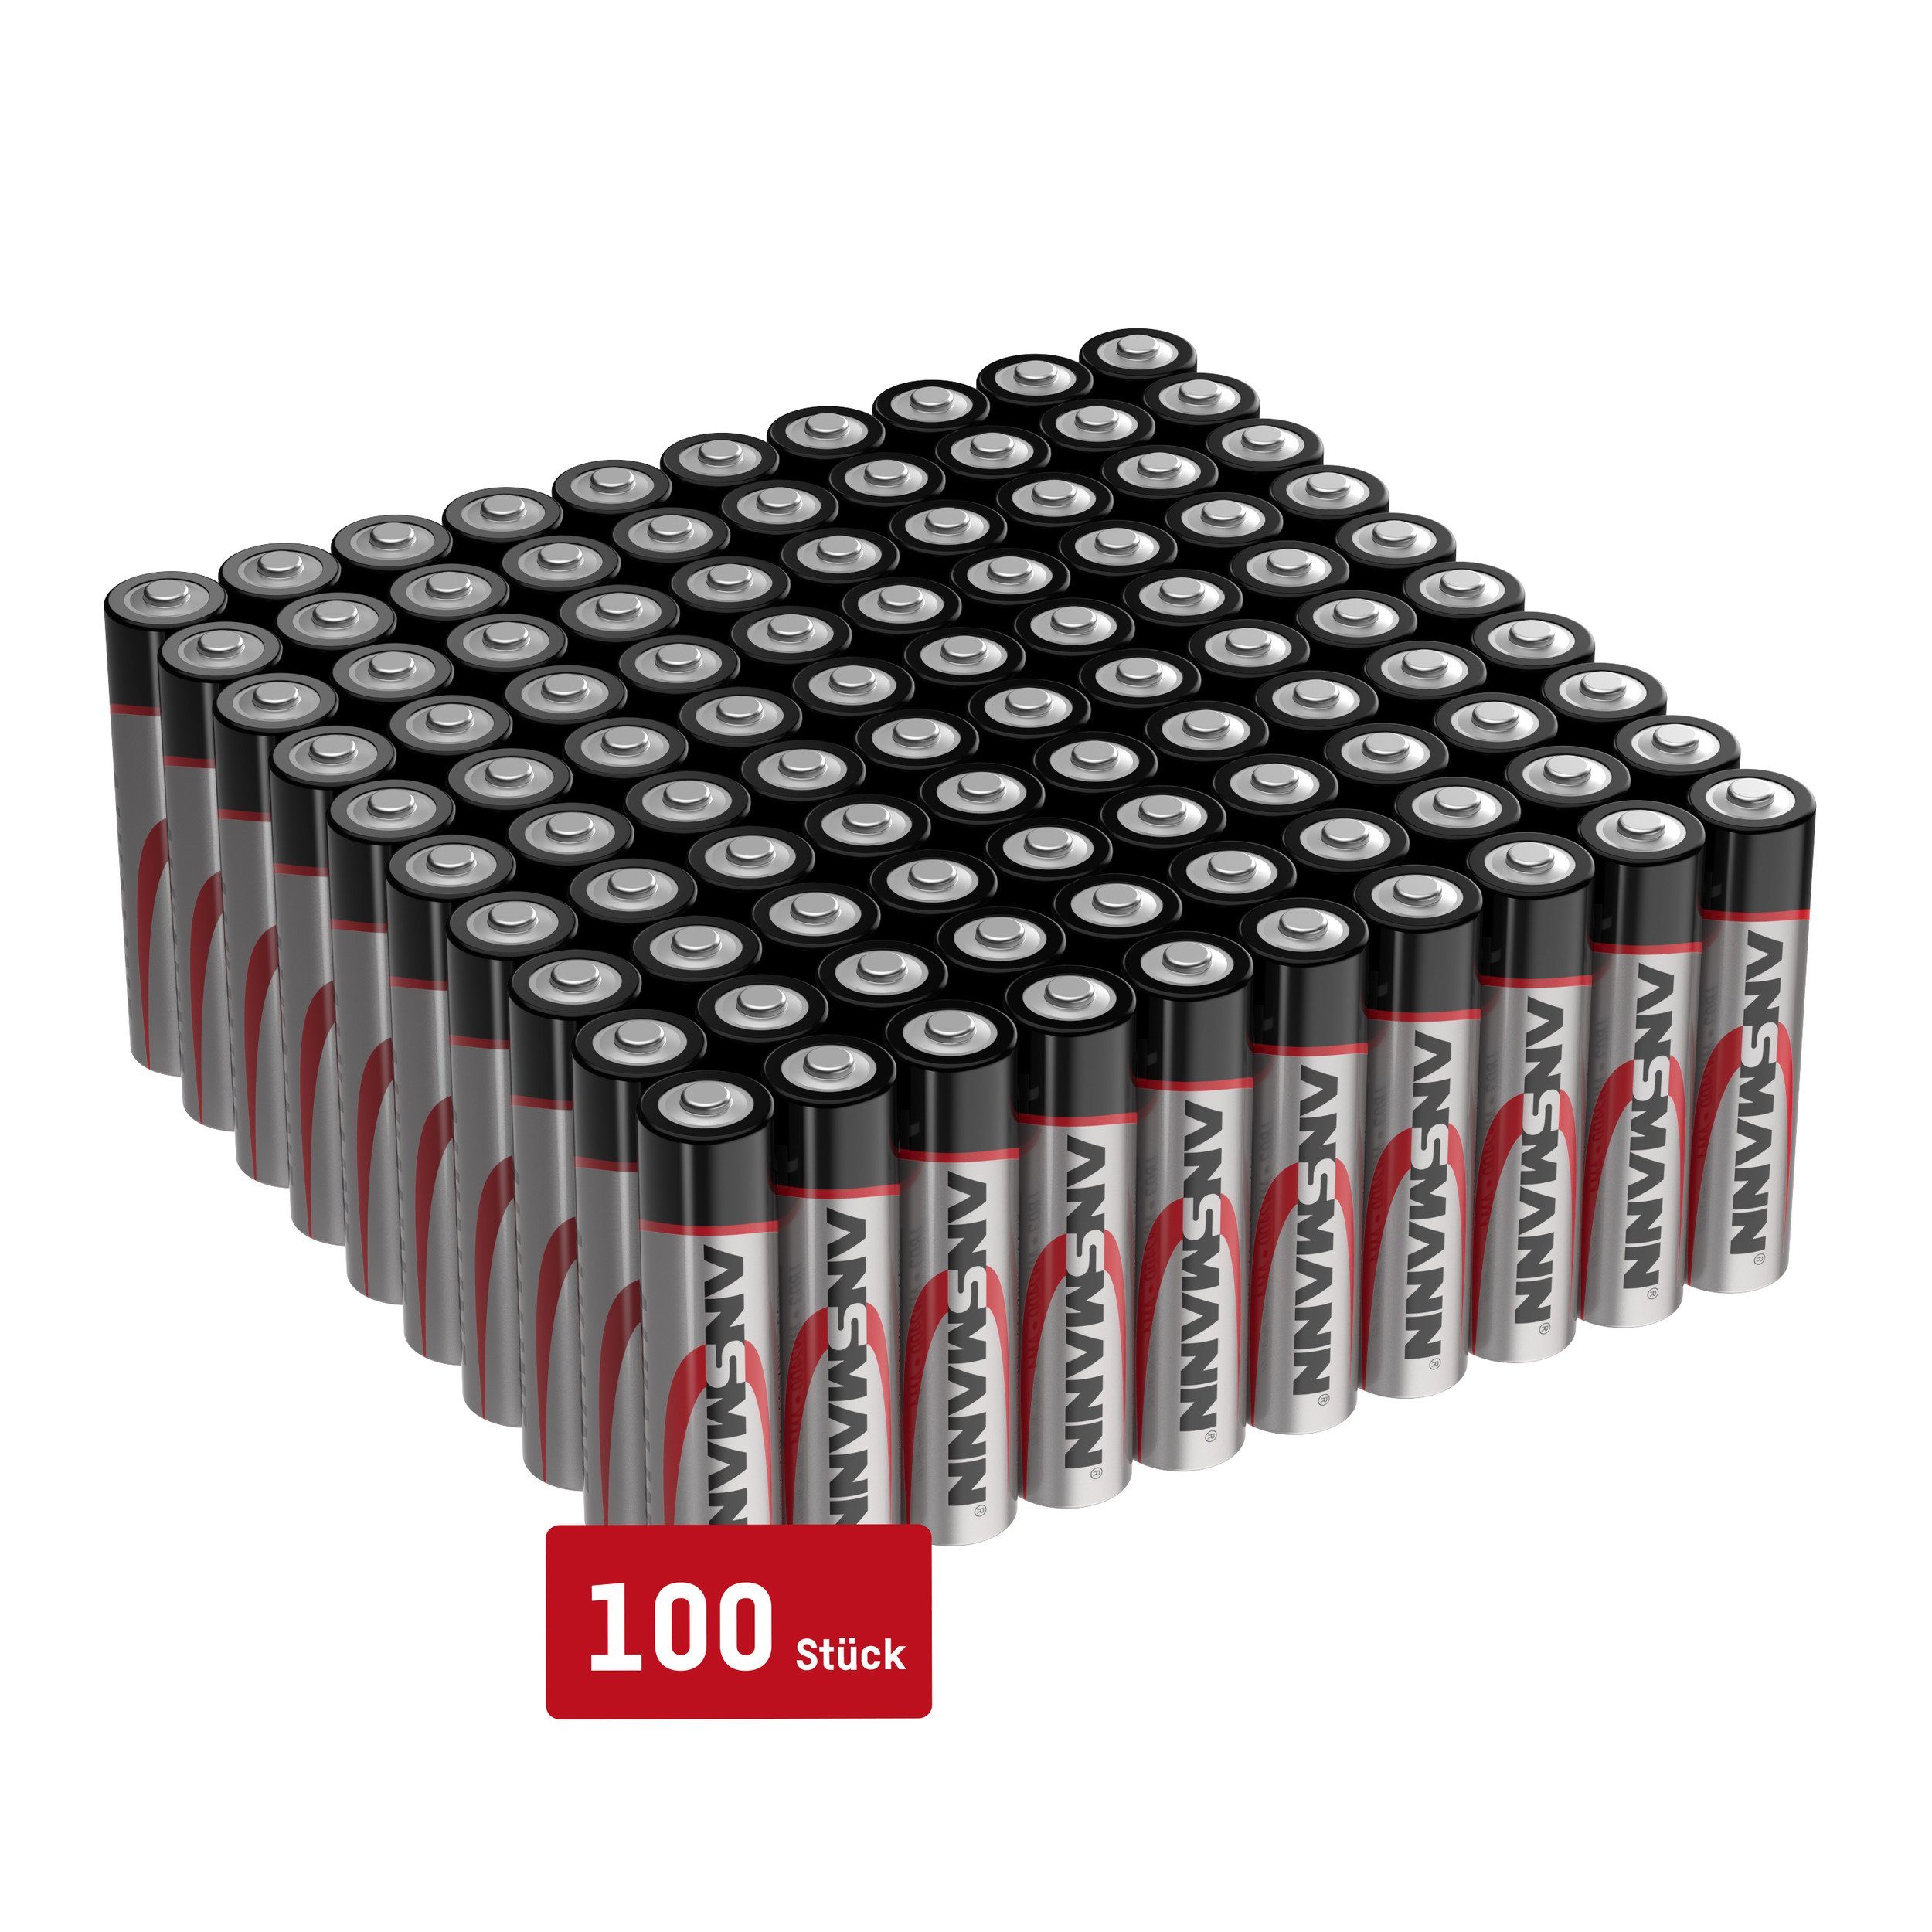 ANSMANN® Batterien AAA 100 Stück, Alkaline Micro Batterie, für Lichterkette uvm. Batterie